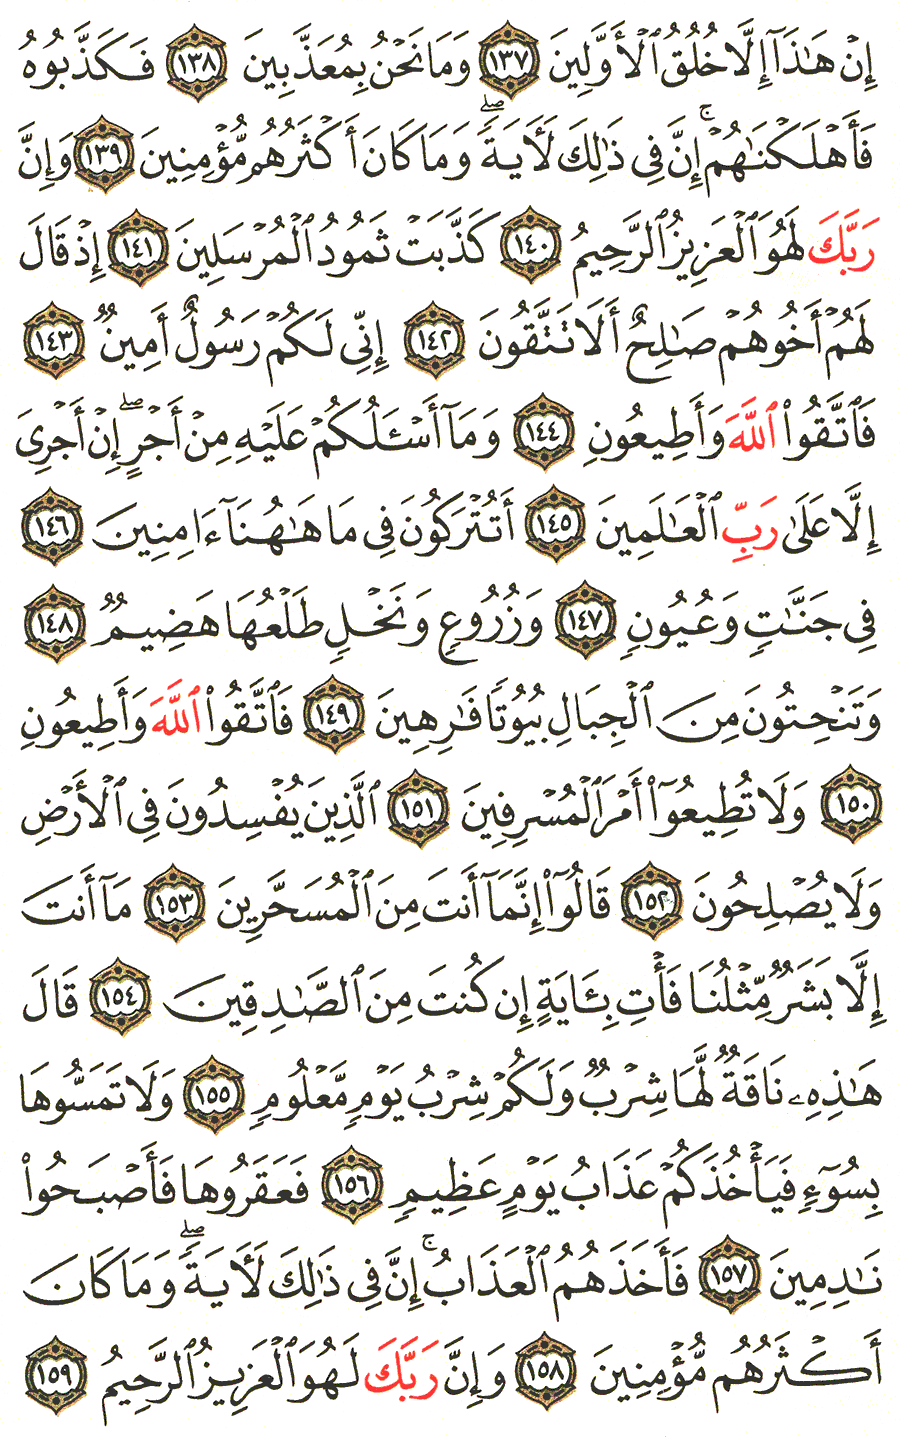 الصفحة 373 من القرآن الكريم